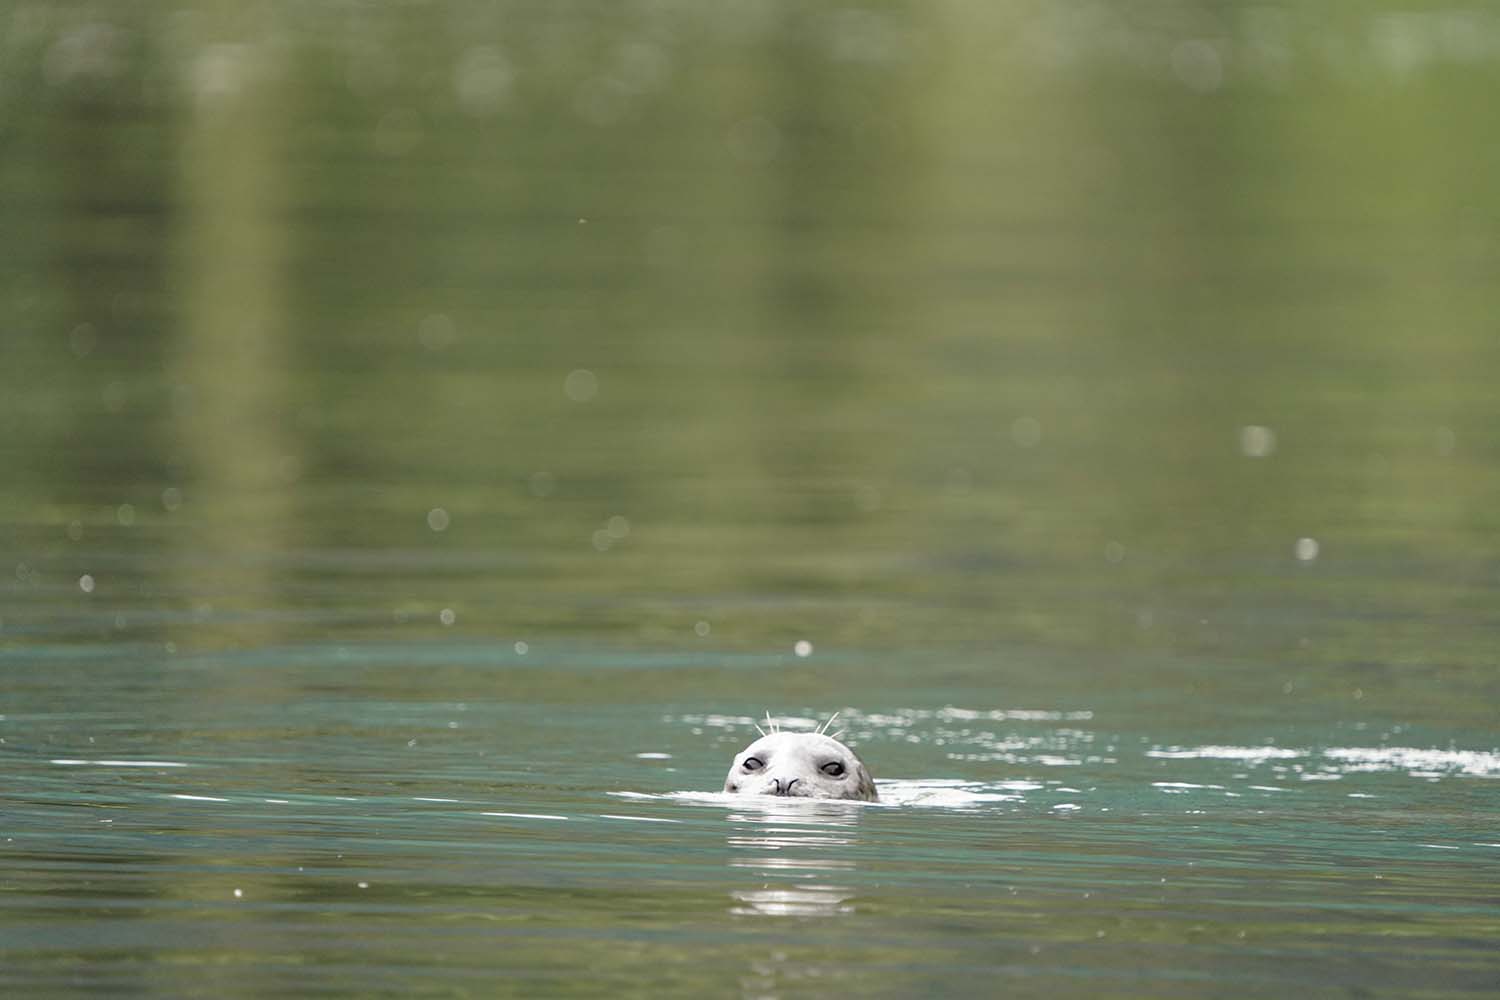 A seal surfacing